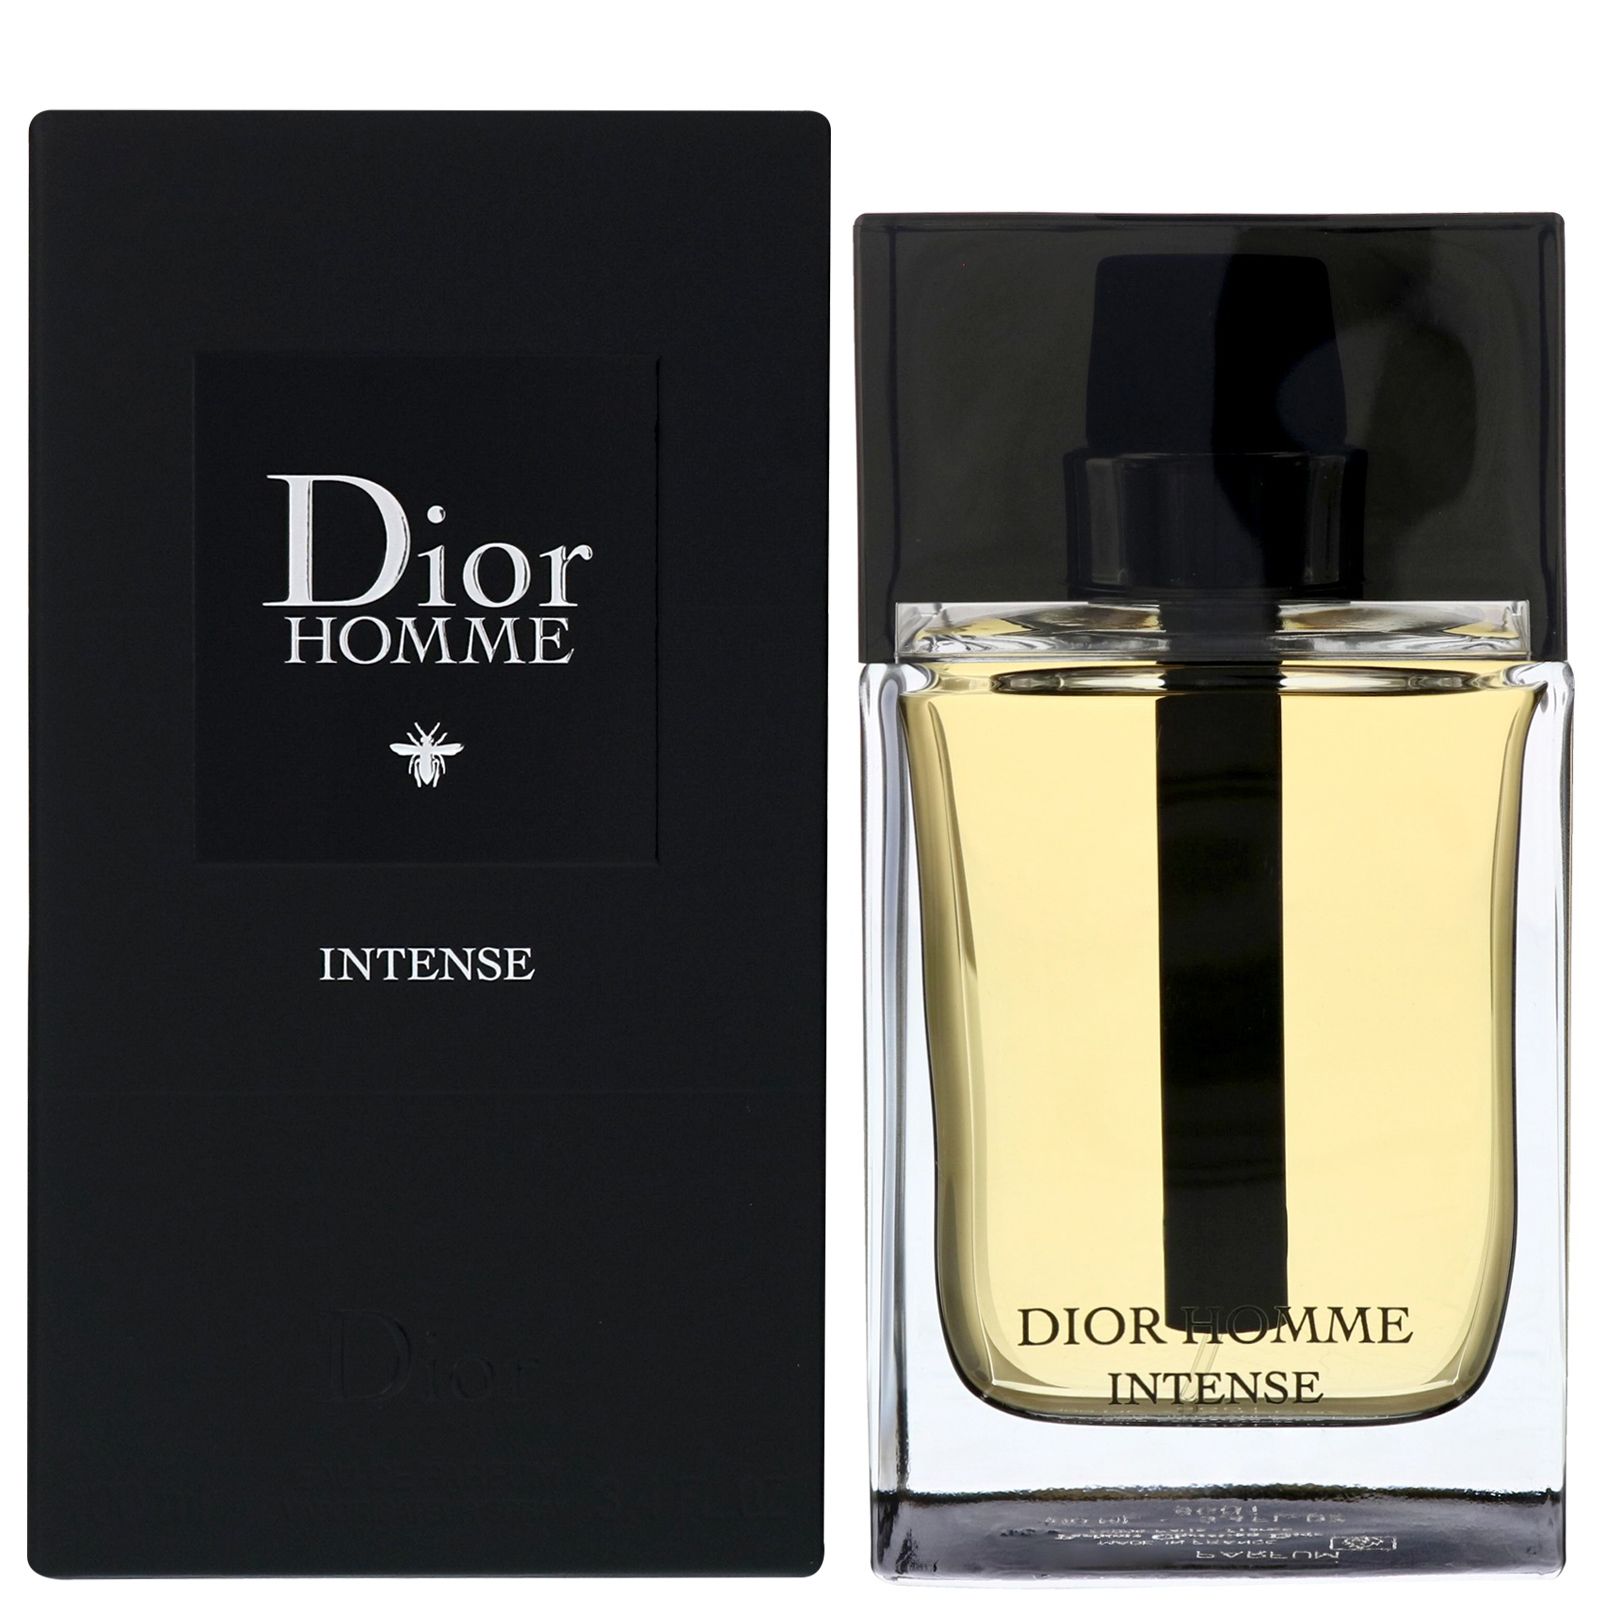 Dior homme купить мужской. Christian Dior Dior homme intense. Dior homme intense EDP 100ml. Dior homme intense 2011. CD Dior homme intense EDP.